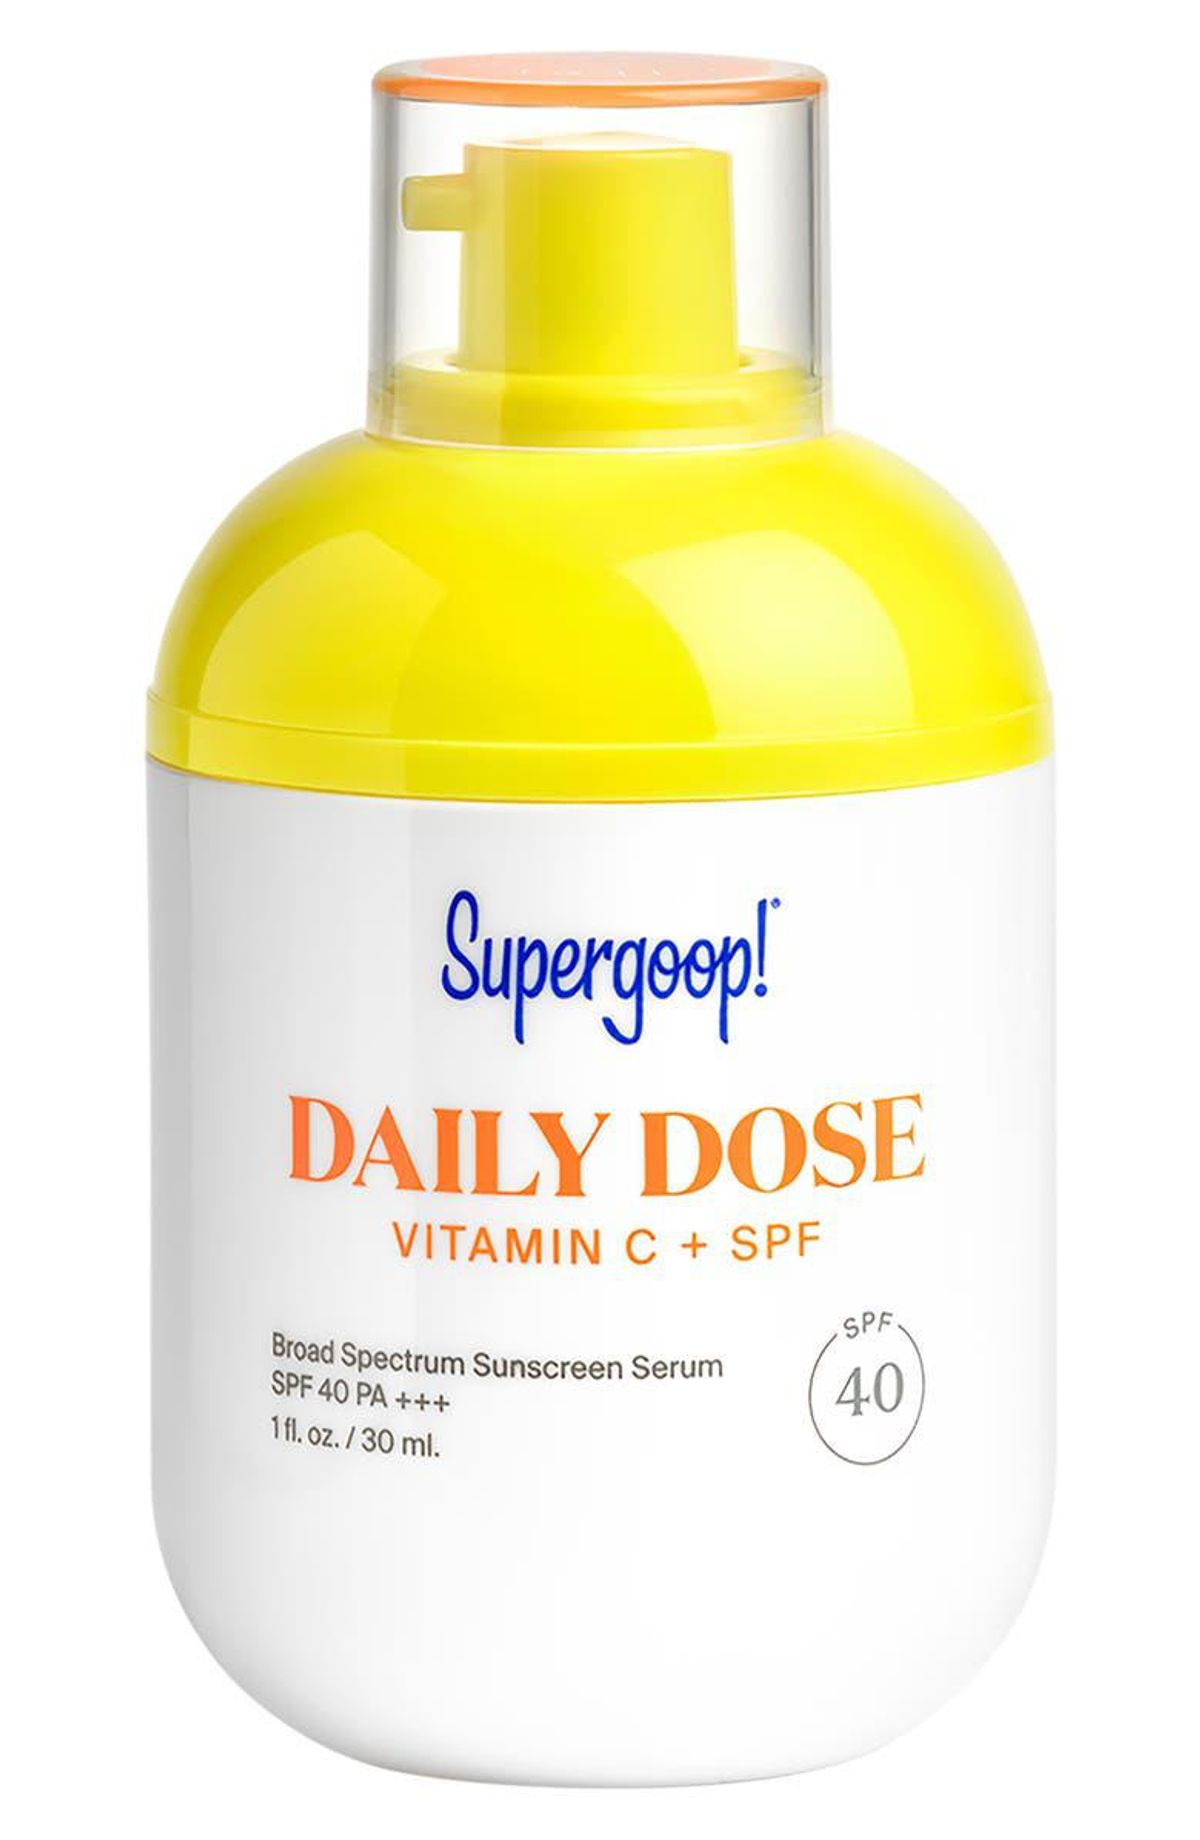 Daily Dose Vitamin C